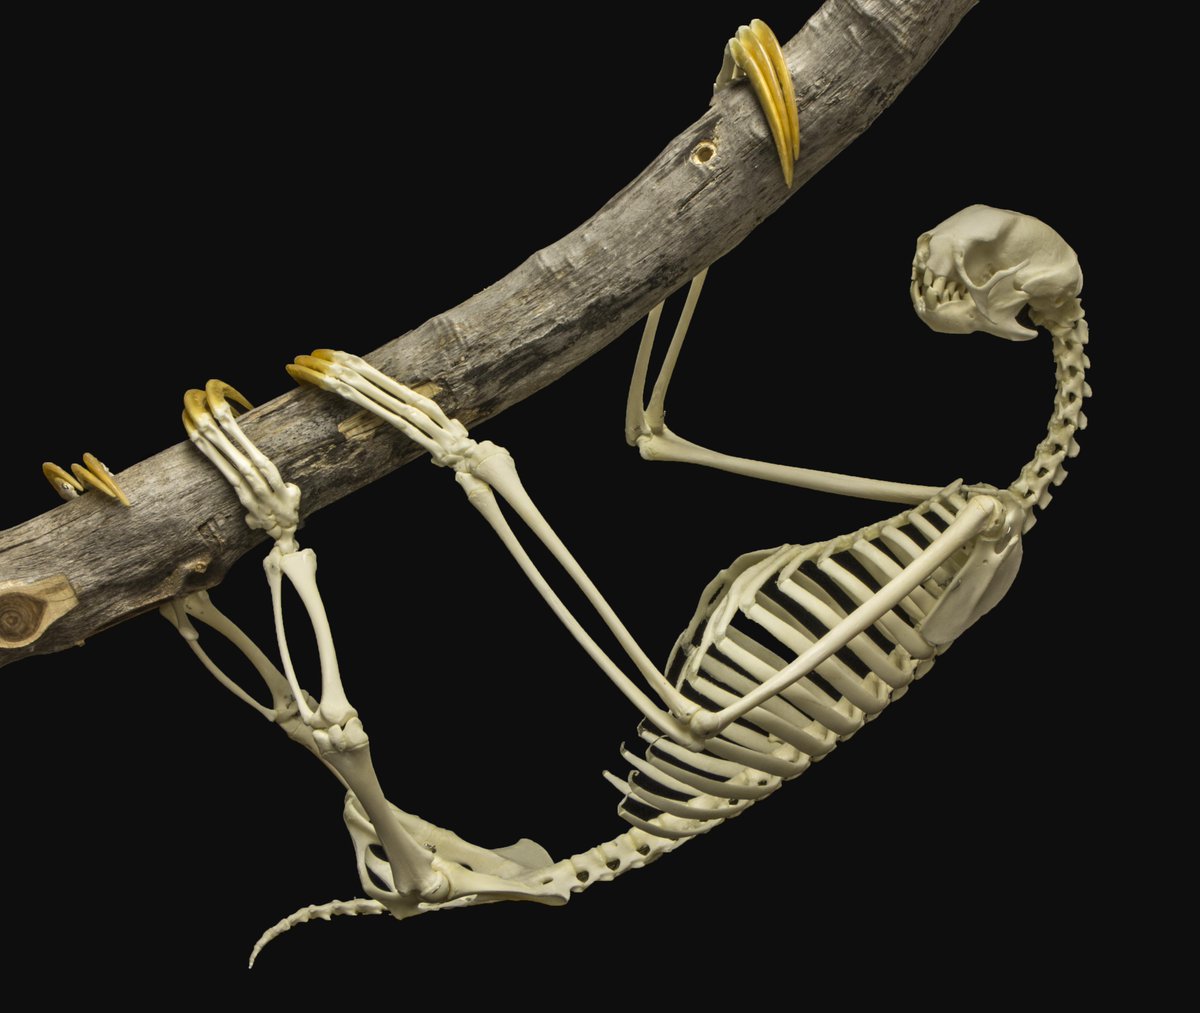 Three-toed Sloth in 2021 | Three toed sloth, Sloth, Skeleton